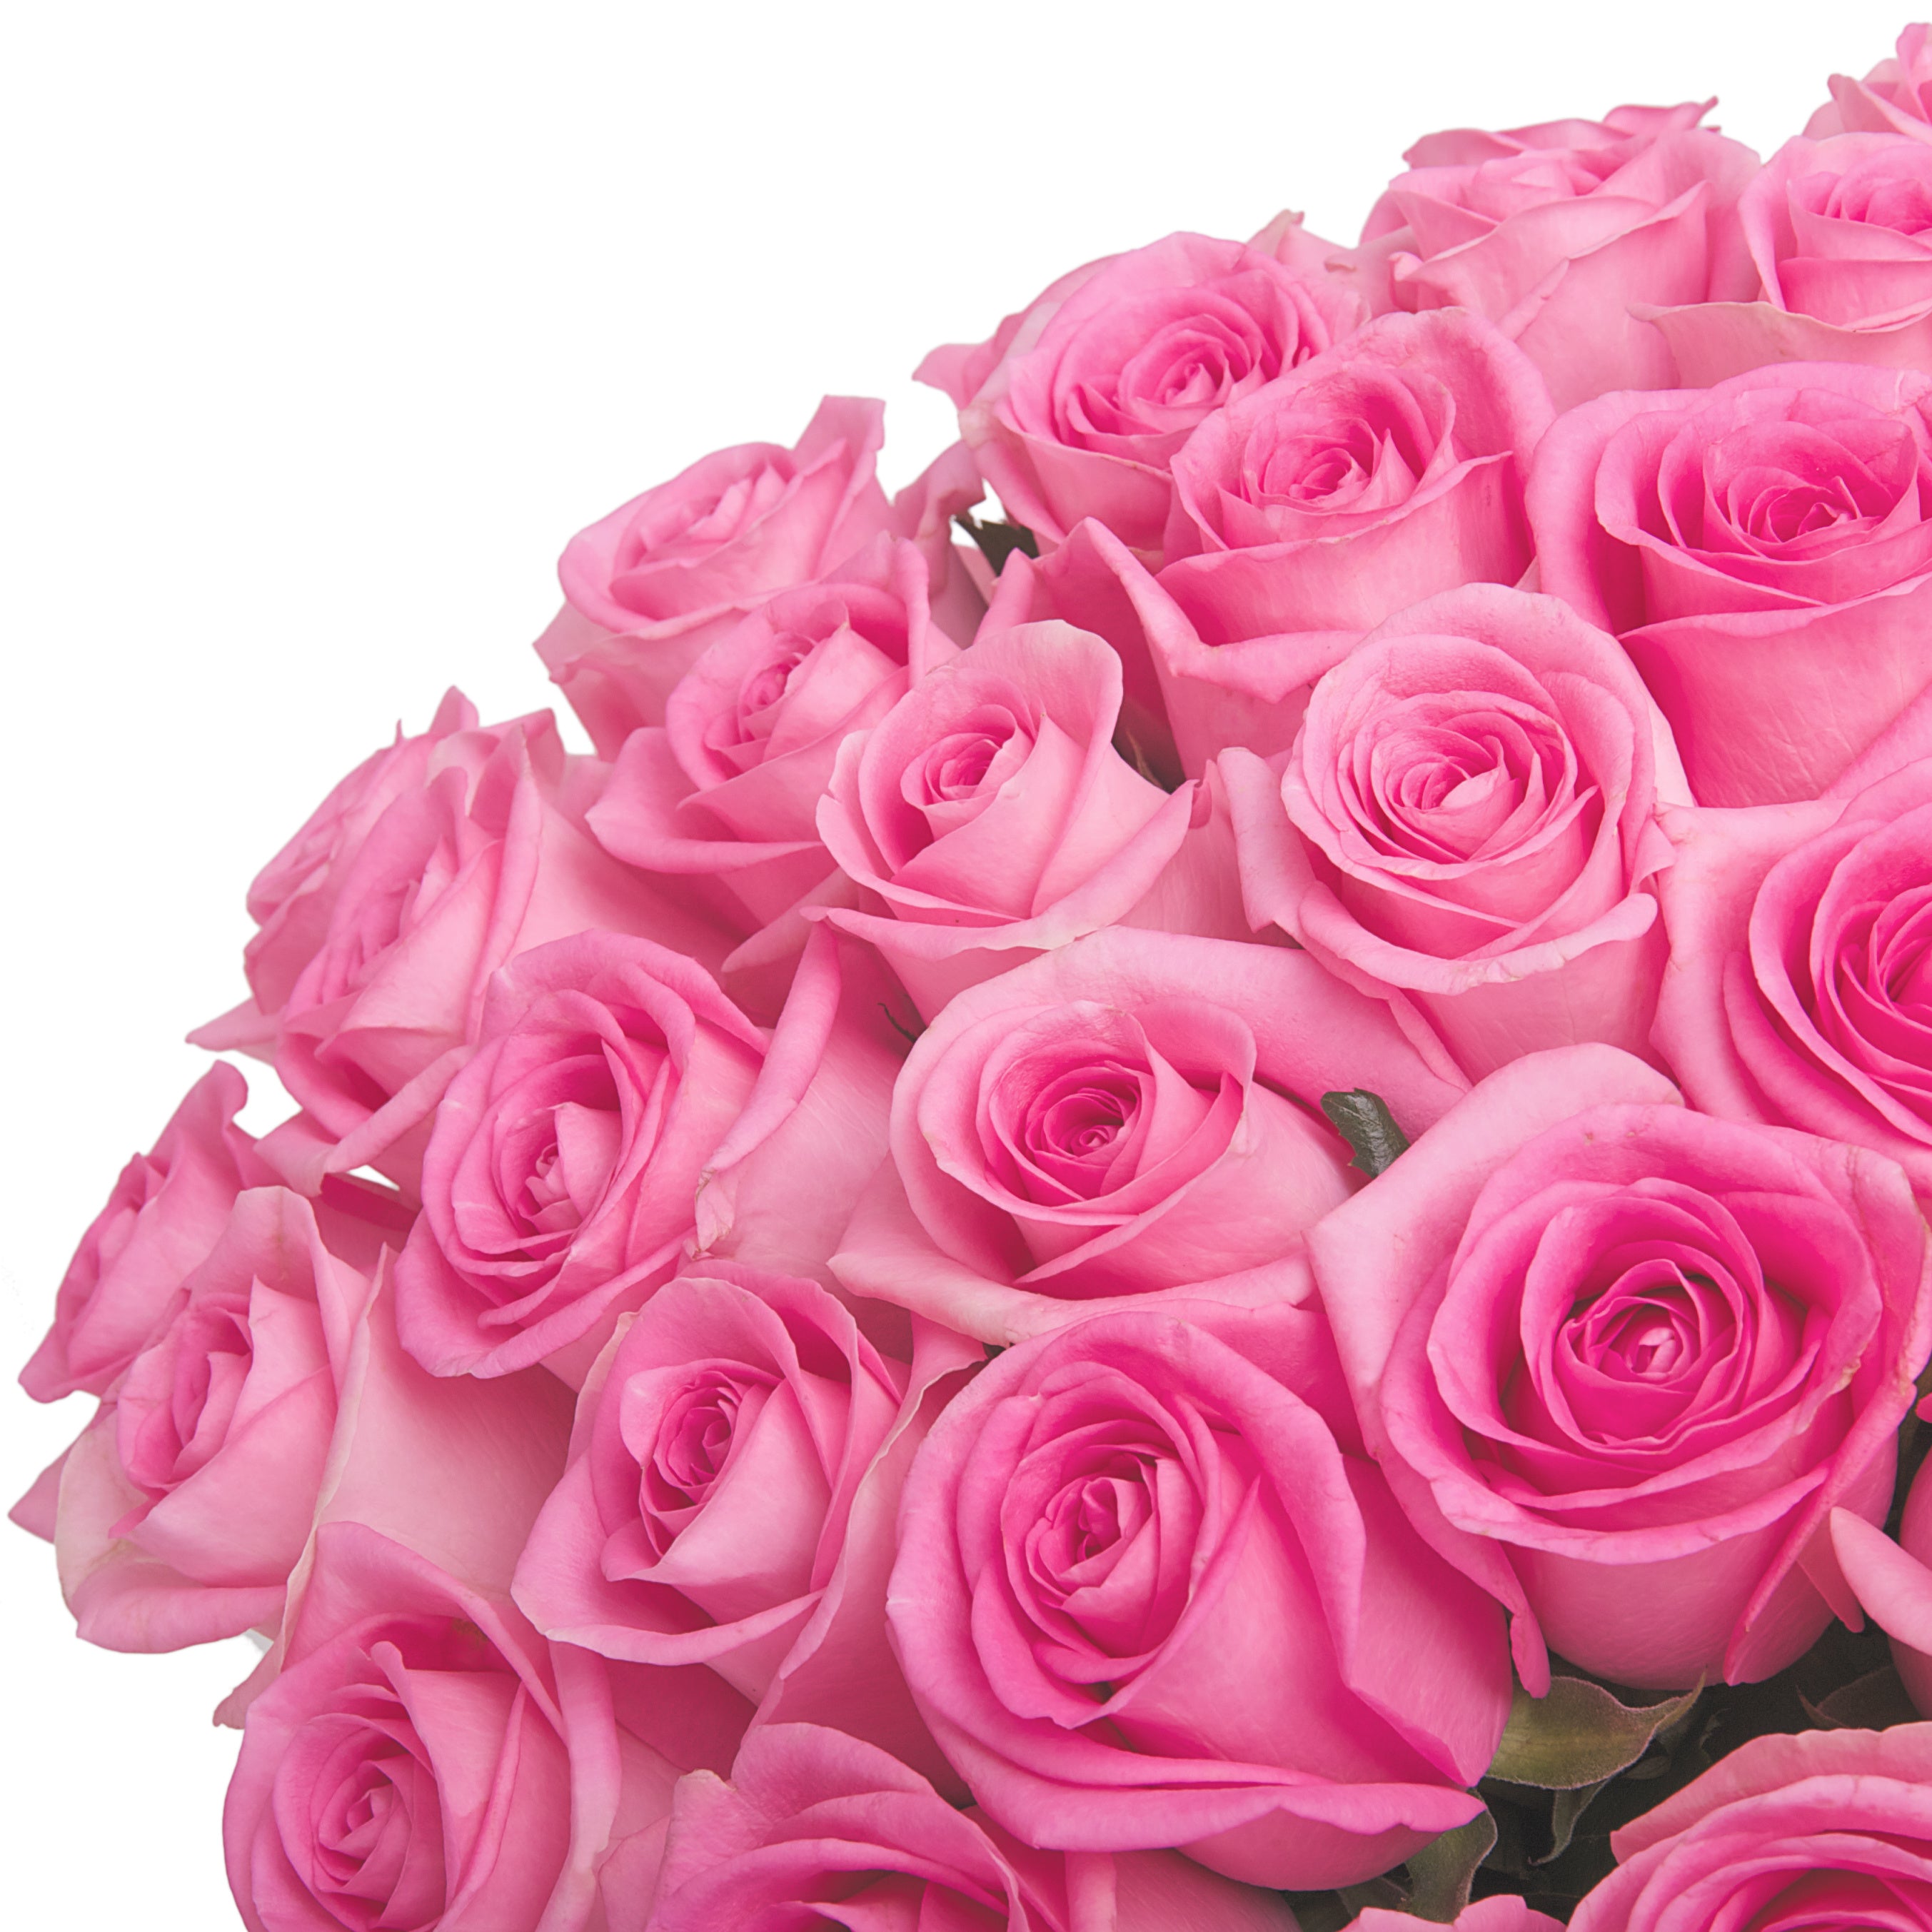 Pinke, langstielige Rosen